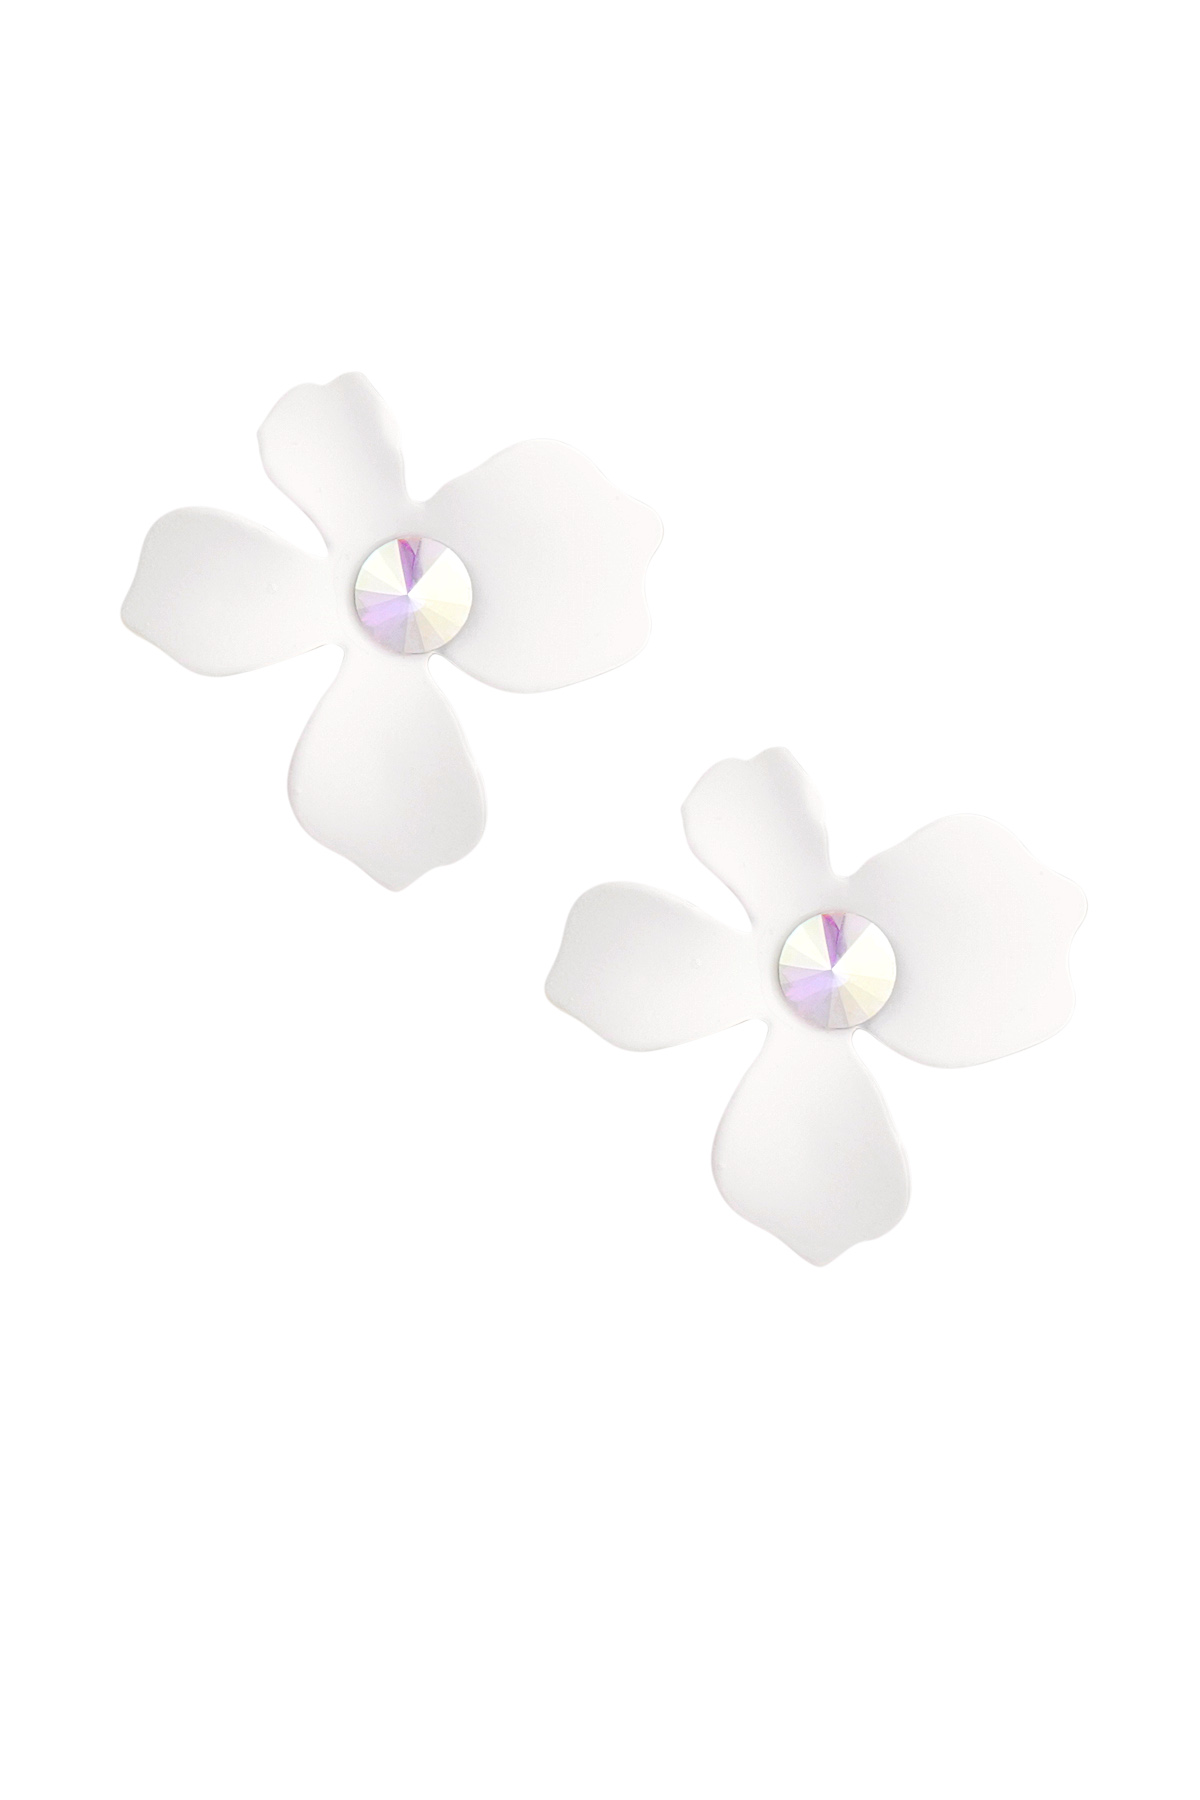 Orecchini floreali estivi - bianchi h5 